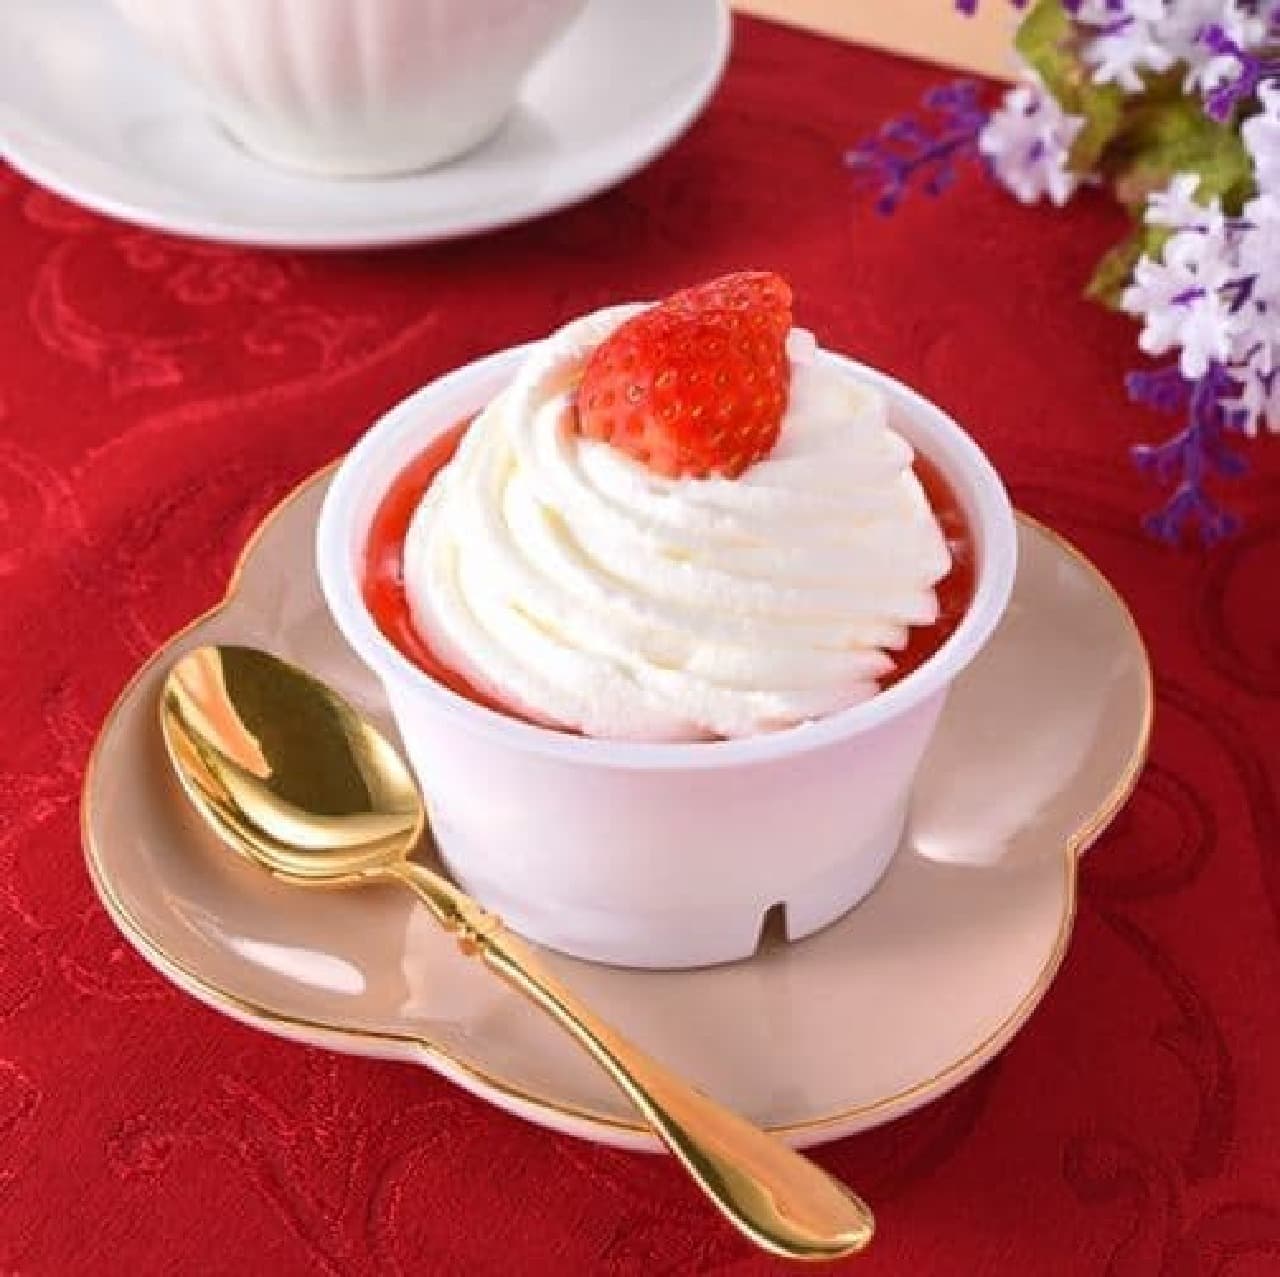 FamilyMart "Cream Hoobaru Strawberry Cake"